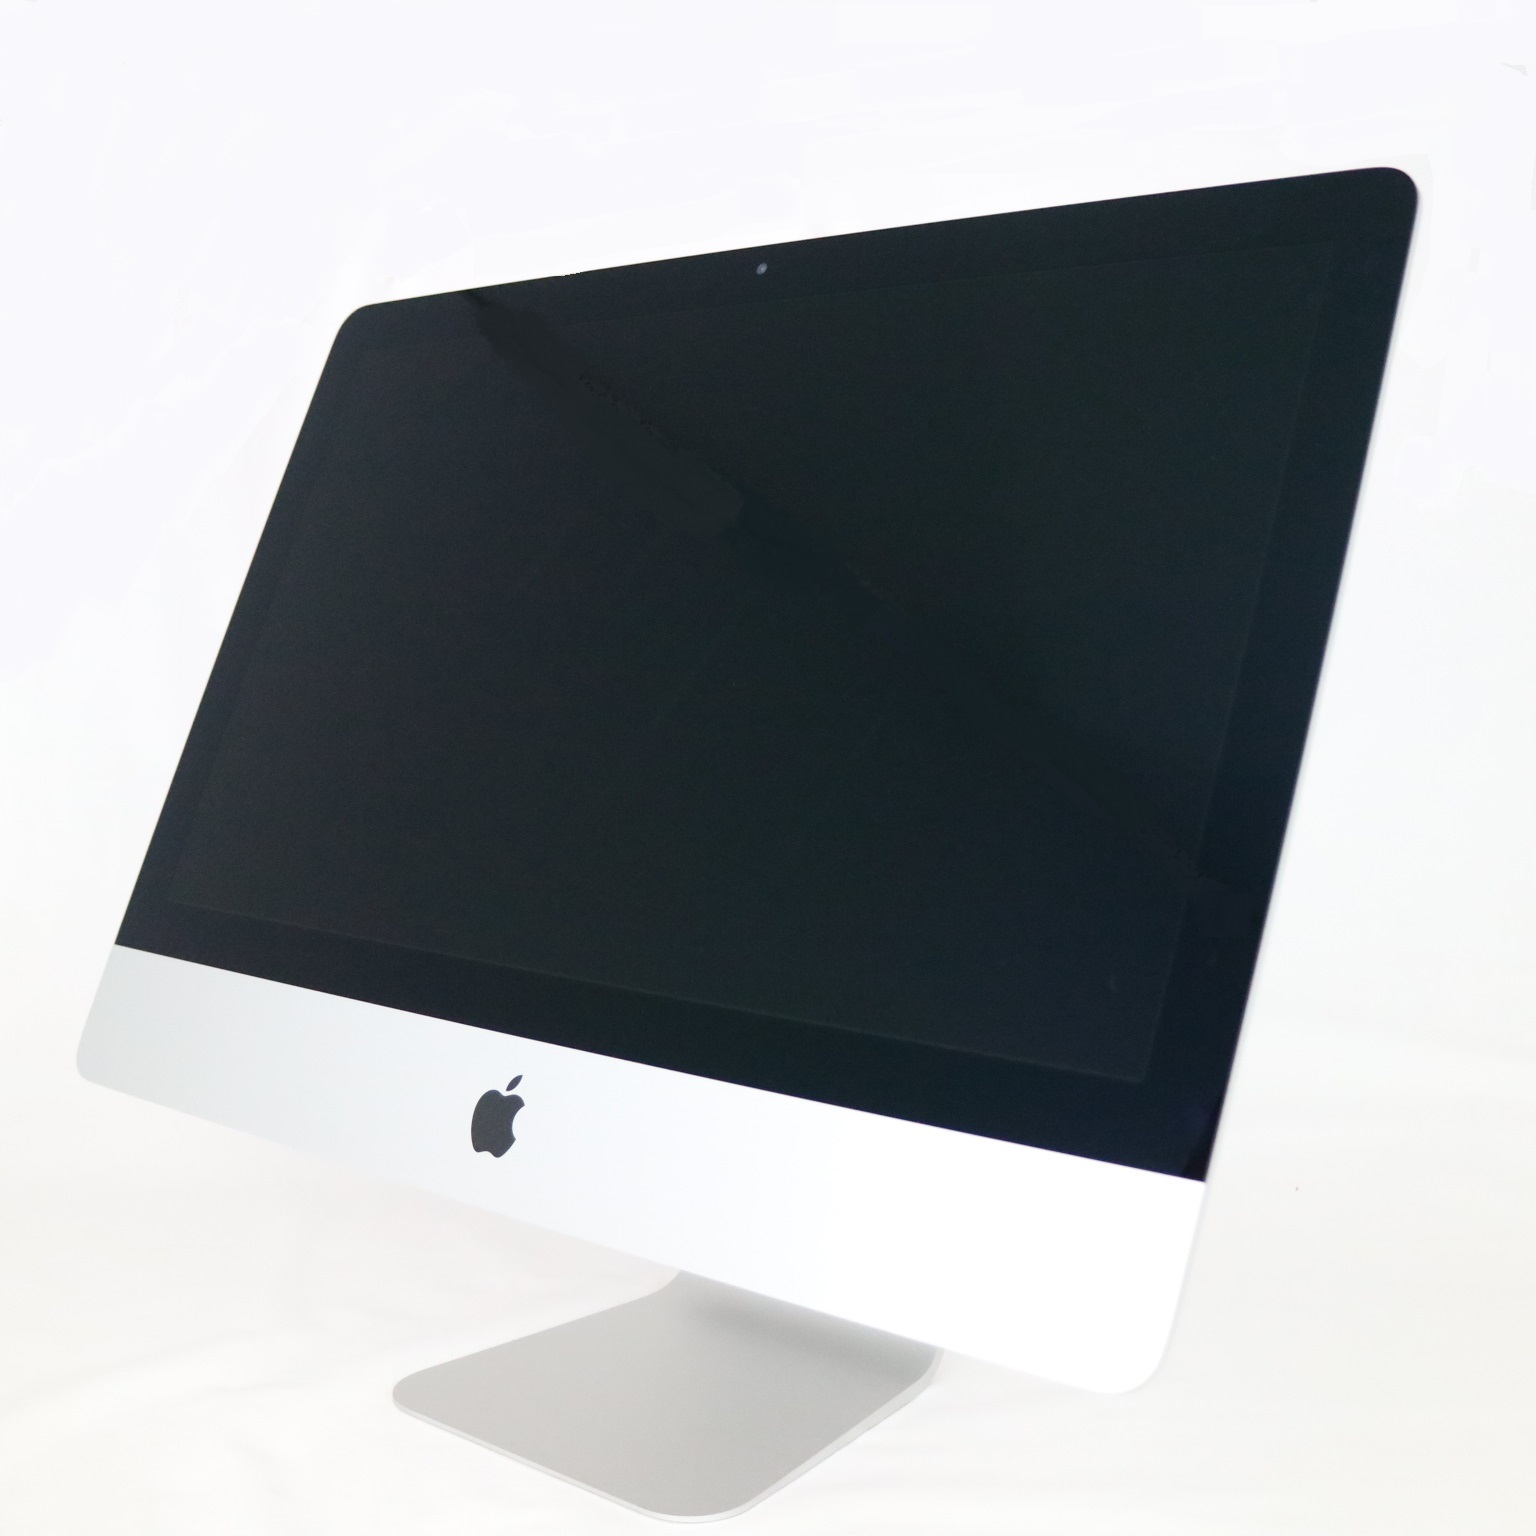 デスクトップパソコン/Mac デスクトップ - Mac/iMac/21.5 inch(並び順 